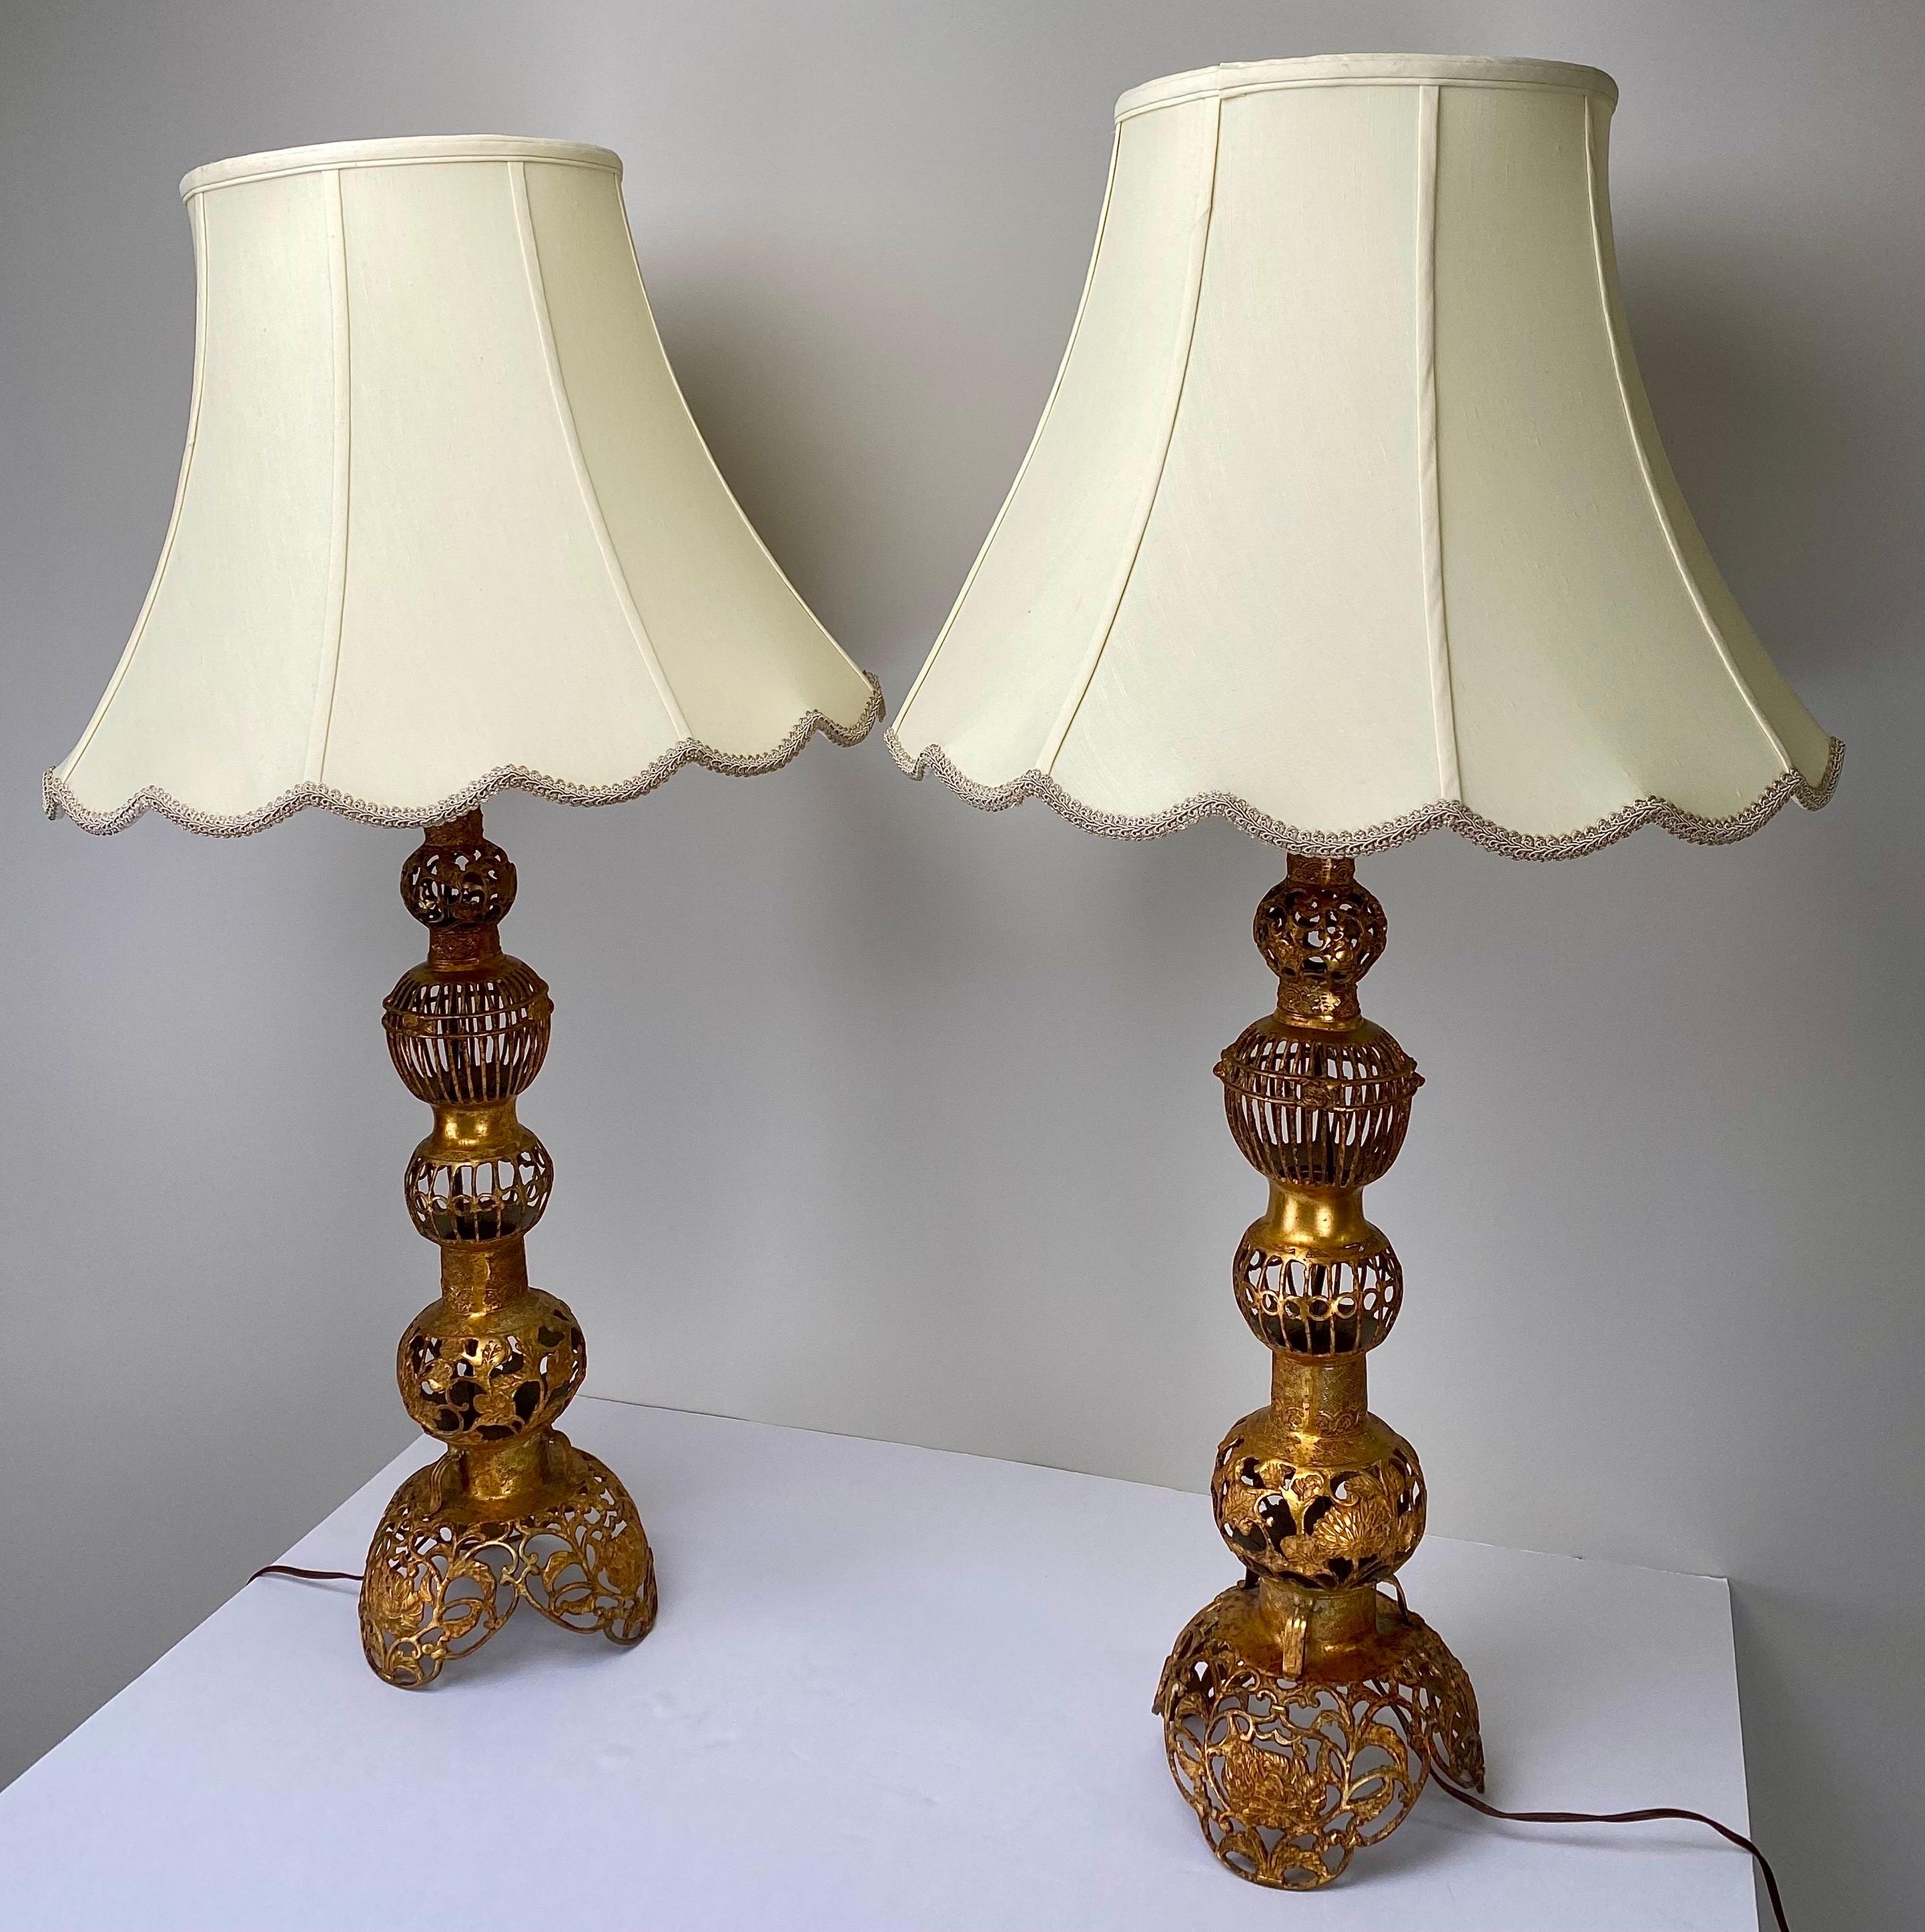 Un'impressionante coppia di lampade da tavolo in stile cinese Hollywood Regency, che trasudano opulenza e grazia. Realizzate con meticolosa maestria, queste lampade a gradini sono un pezzo maestoso, realizzato in bronzo e immerso in una lussuosa